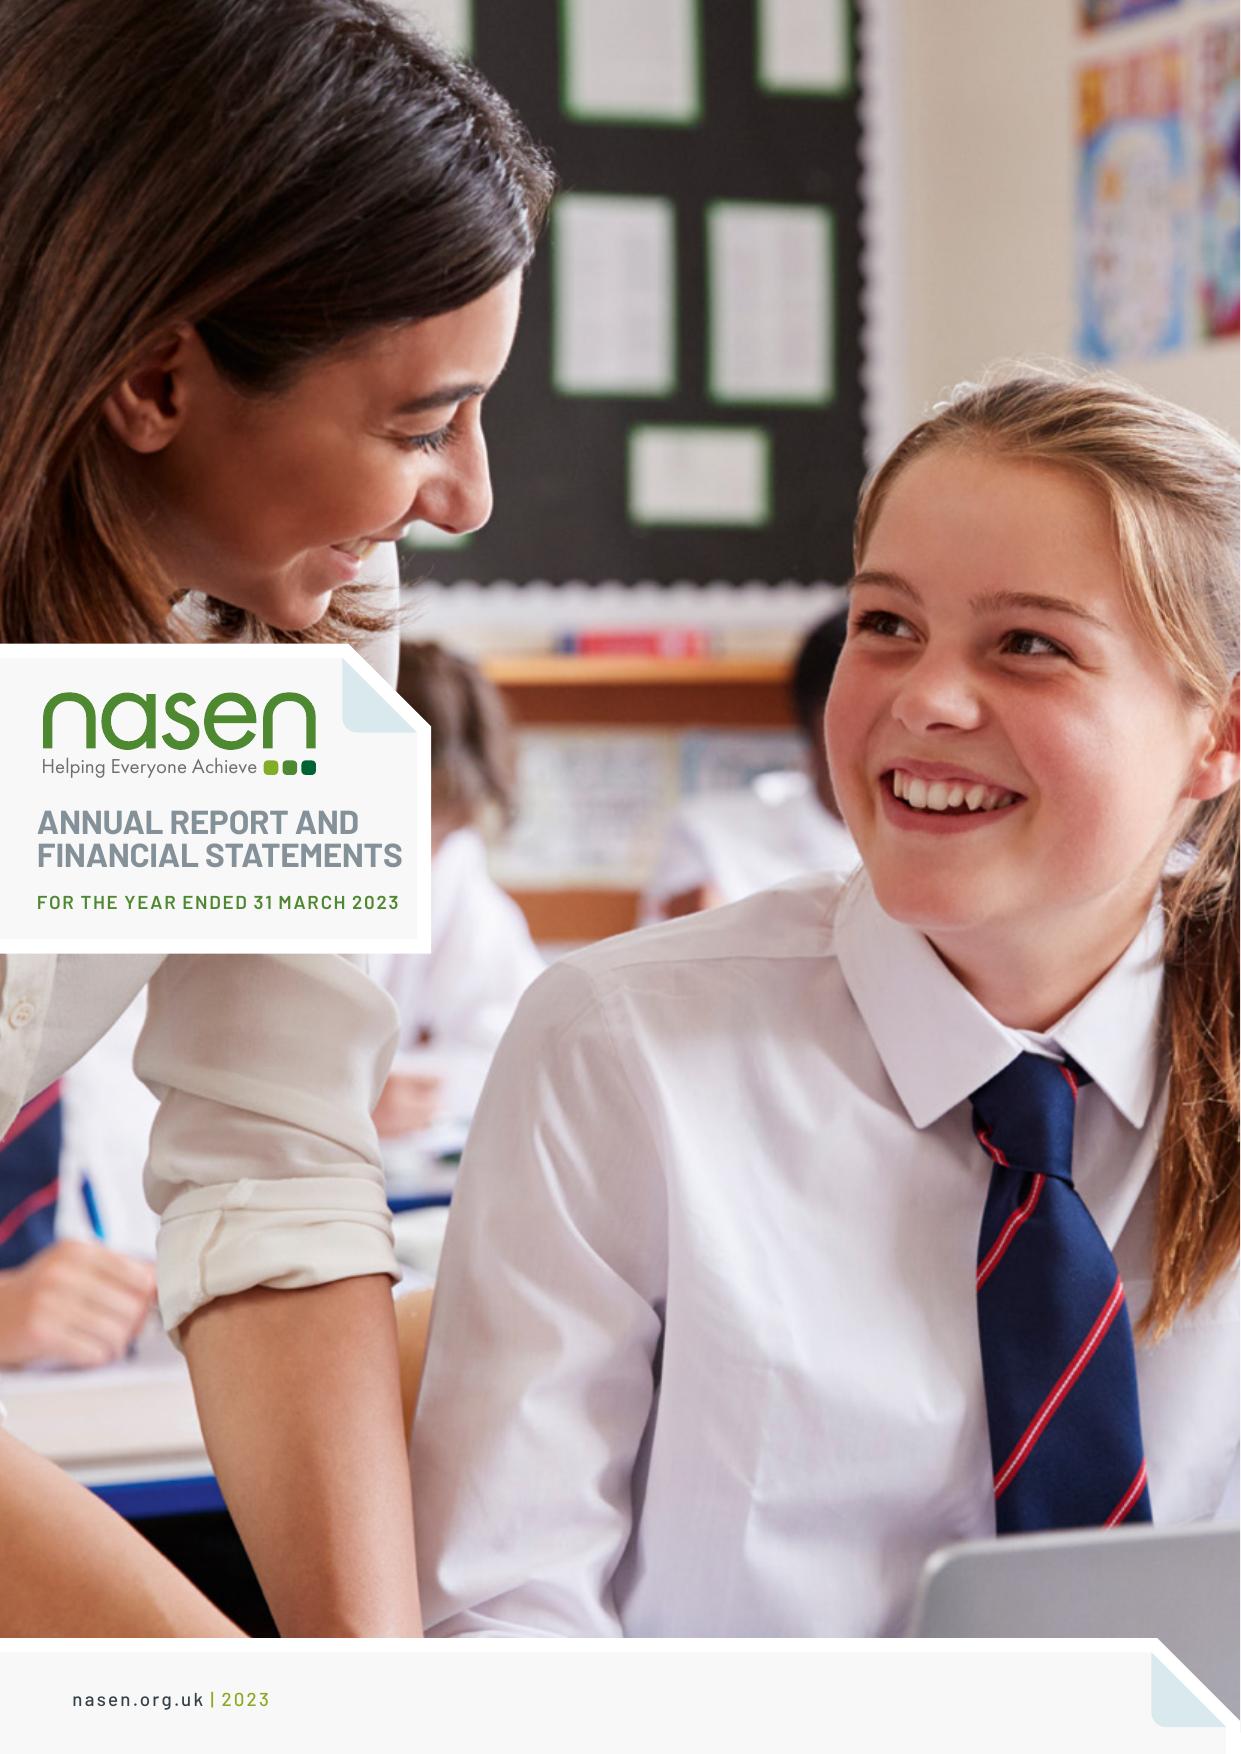 NASEN.ORG.UK 2023 Annual Report